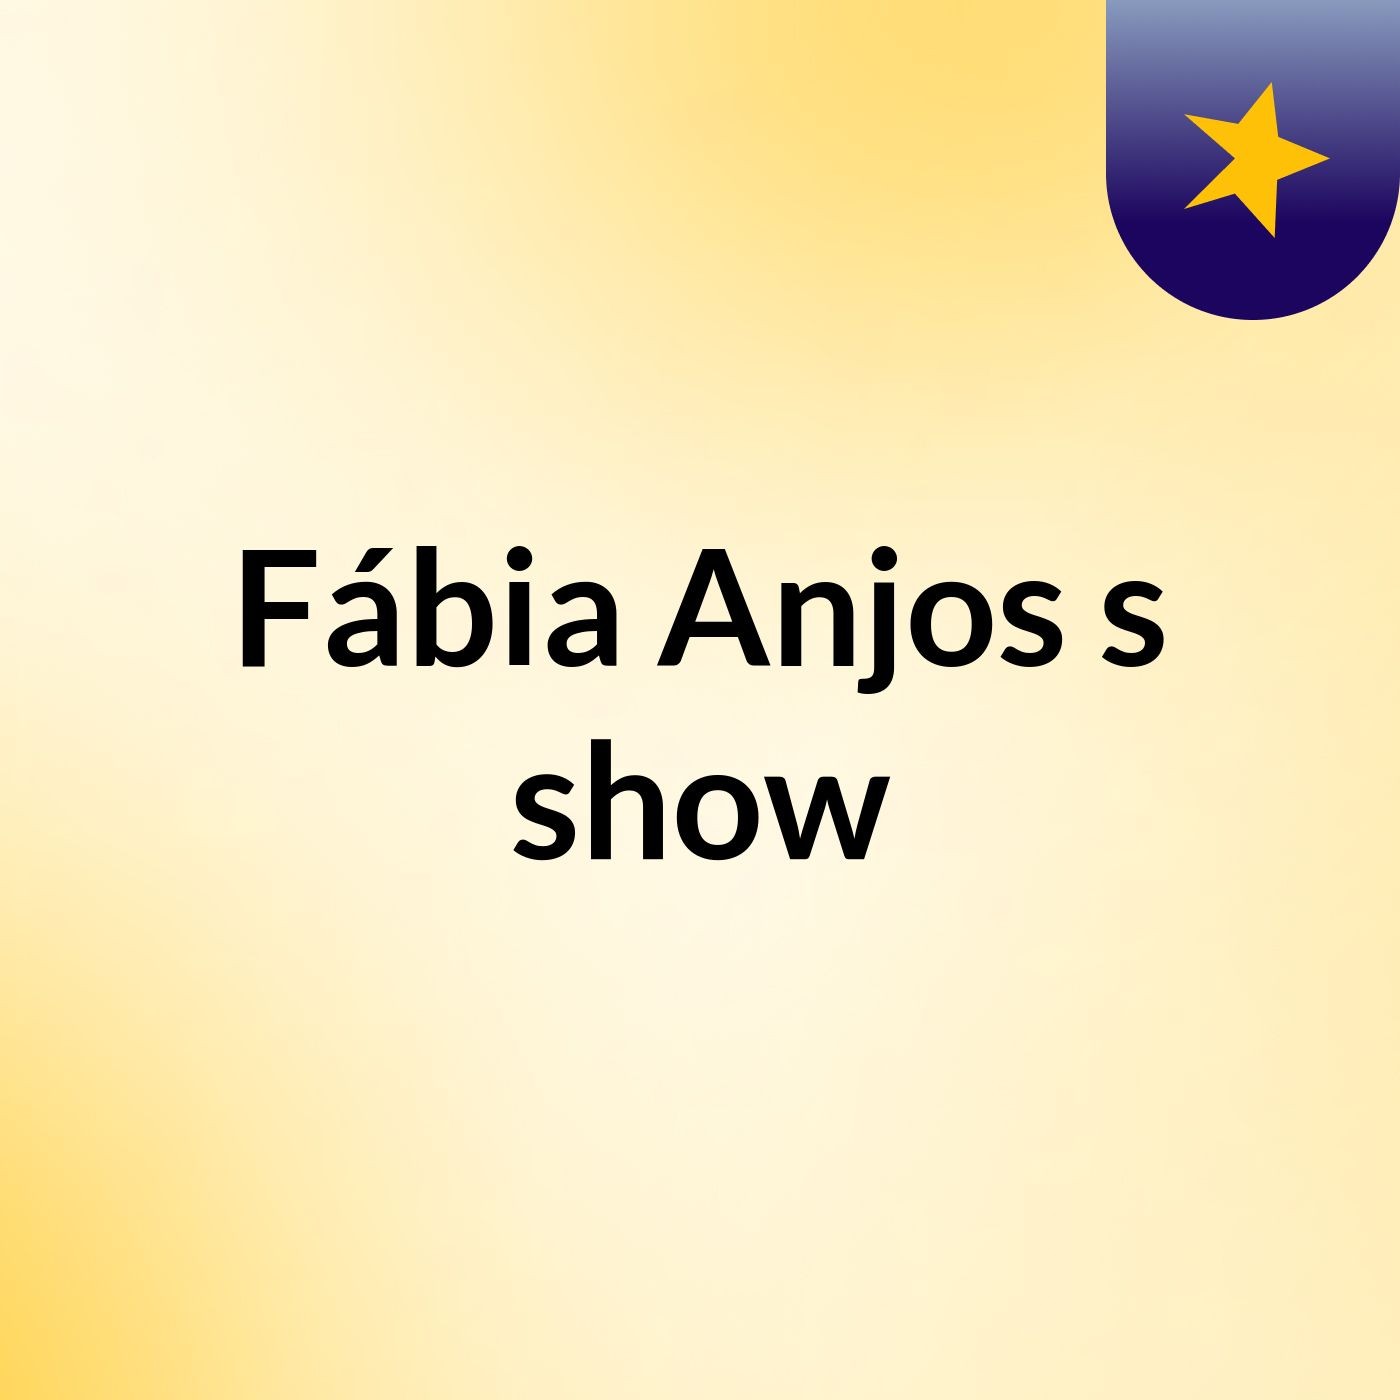 Fábia Anjos's show